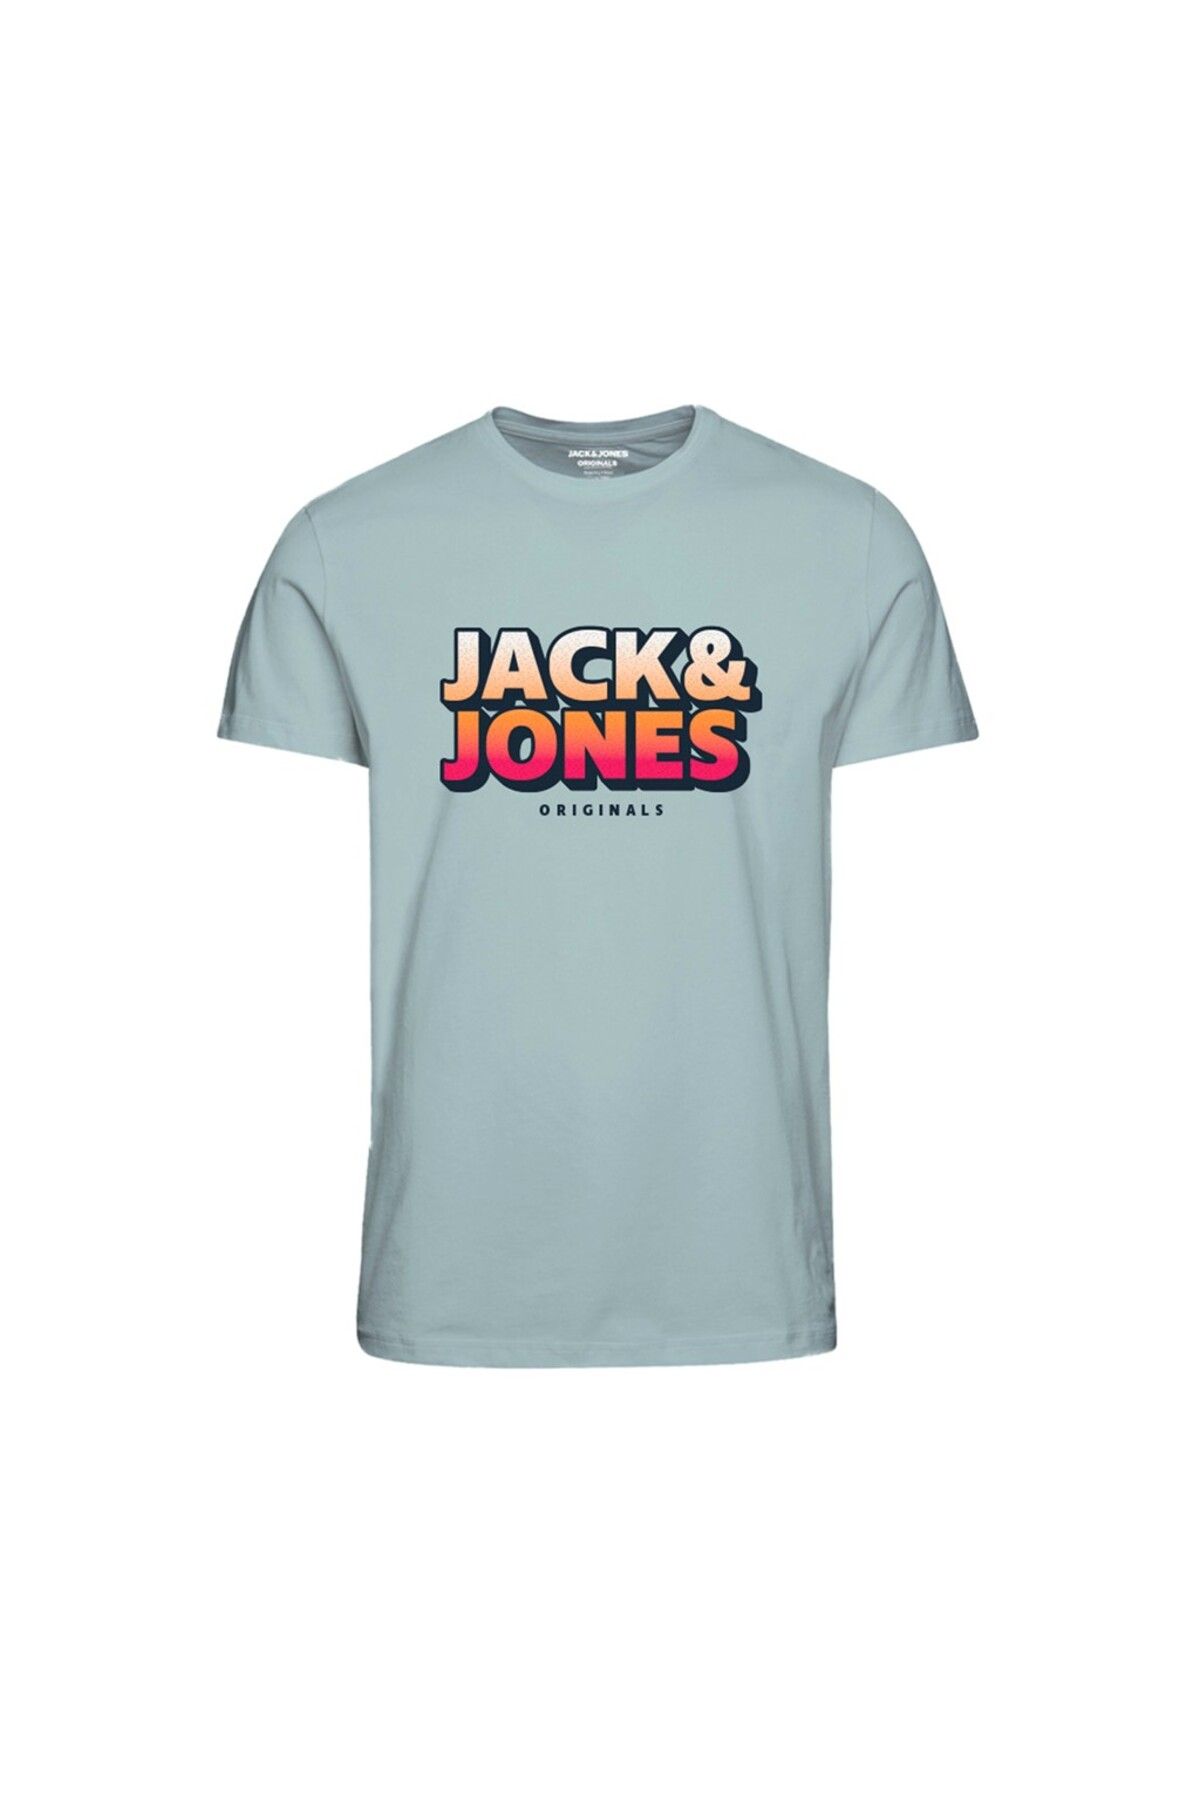 Jack & Jones Jack&jones Plus Sıfır Yaka Büyük Beden Mint Erkek %100 Pamuk T-shirt 12240559